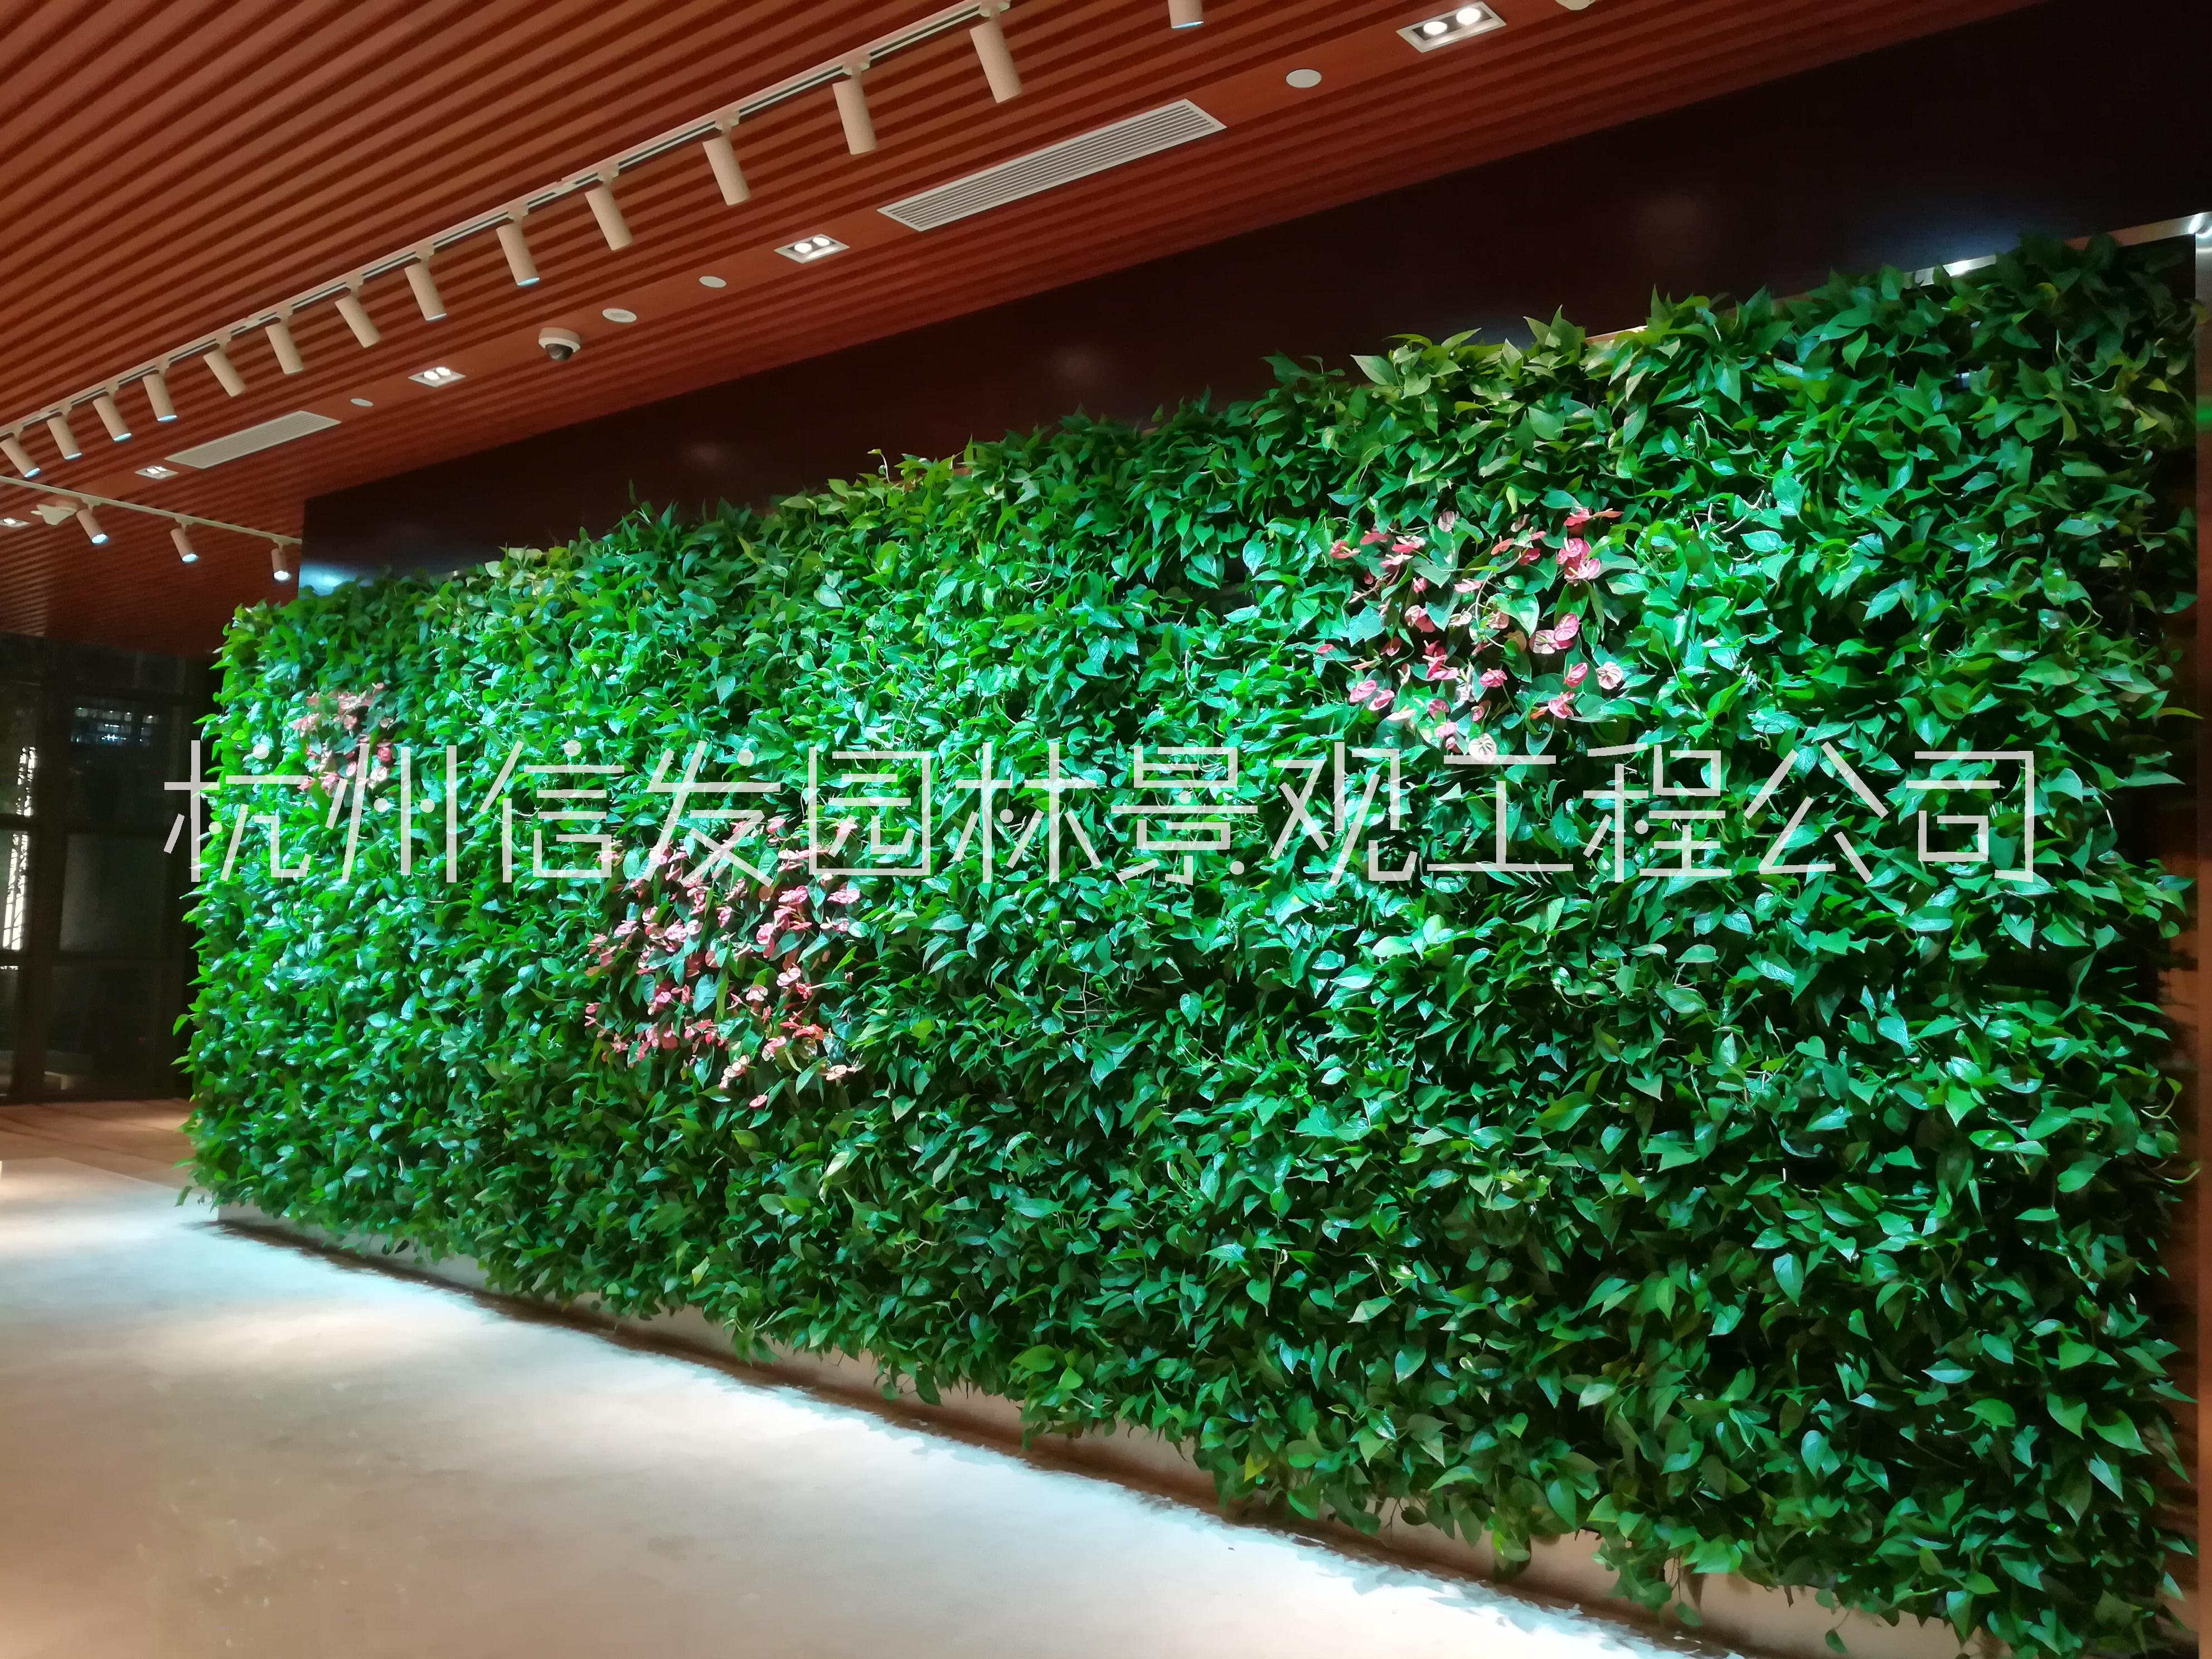 杭州植物墙绿化垂直绿化墙面公司 杭州植物墙垂直绿化墙面公司 杭州植物墙垂直绿化公司 杭州墙垂直绿化公司图片